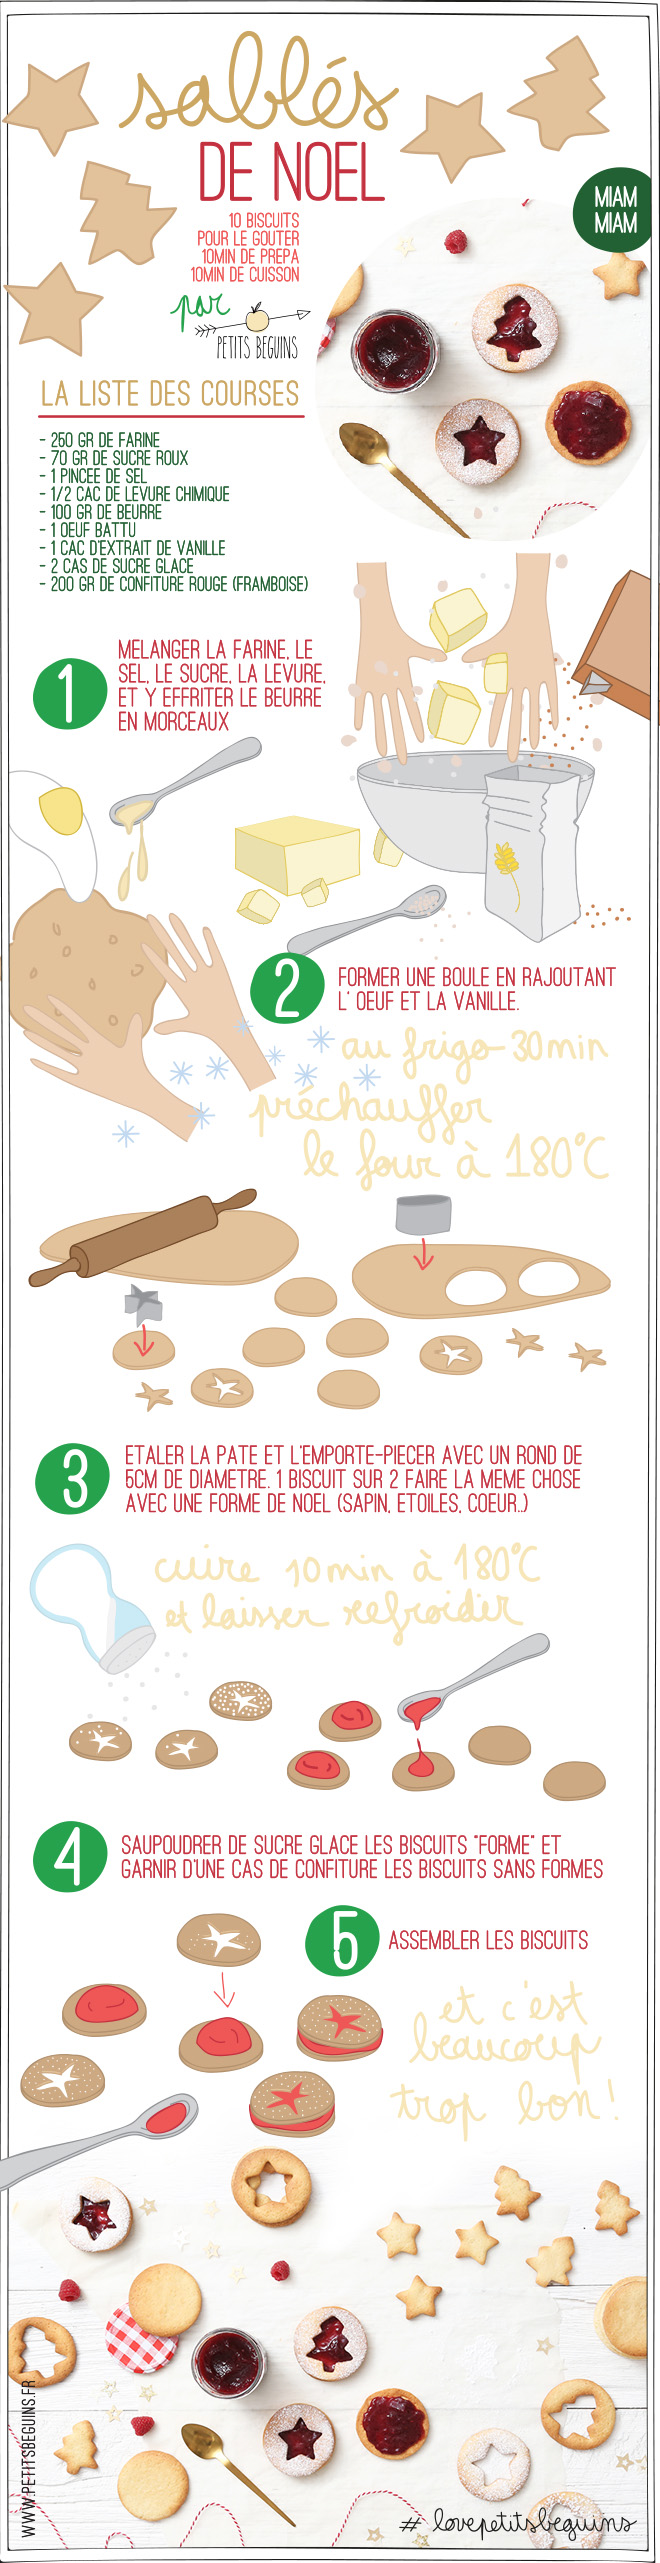 25 recettes de Noël - Gourmandise - Petits Béguins